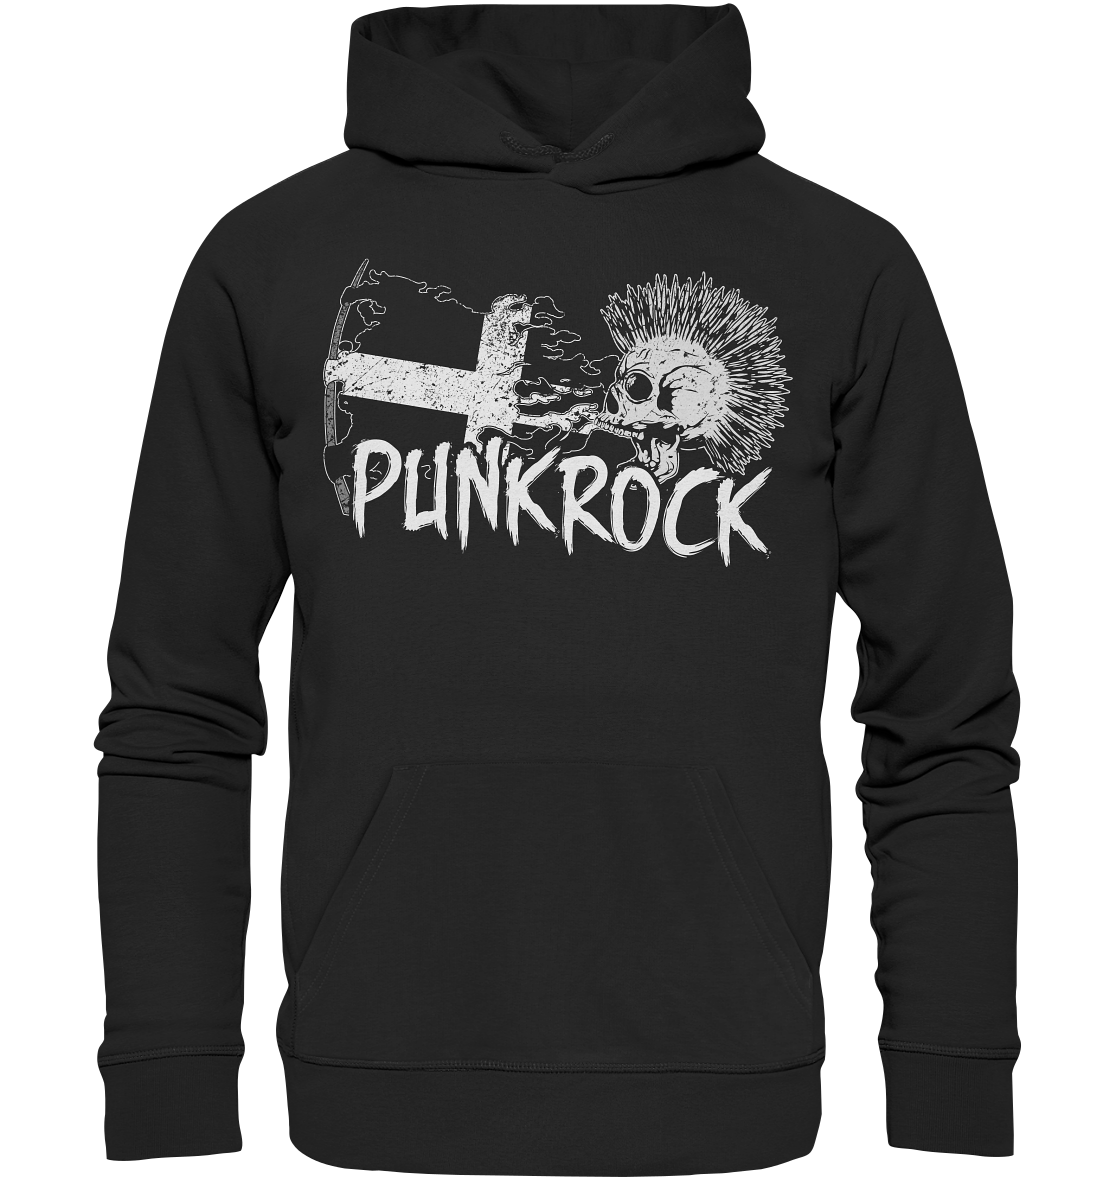 Punkrock "Cornwall" - Premium Unisex Hoodie